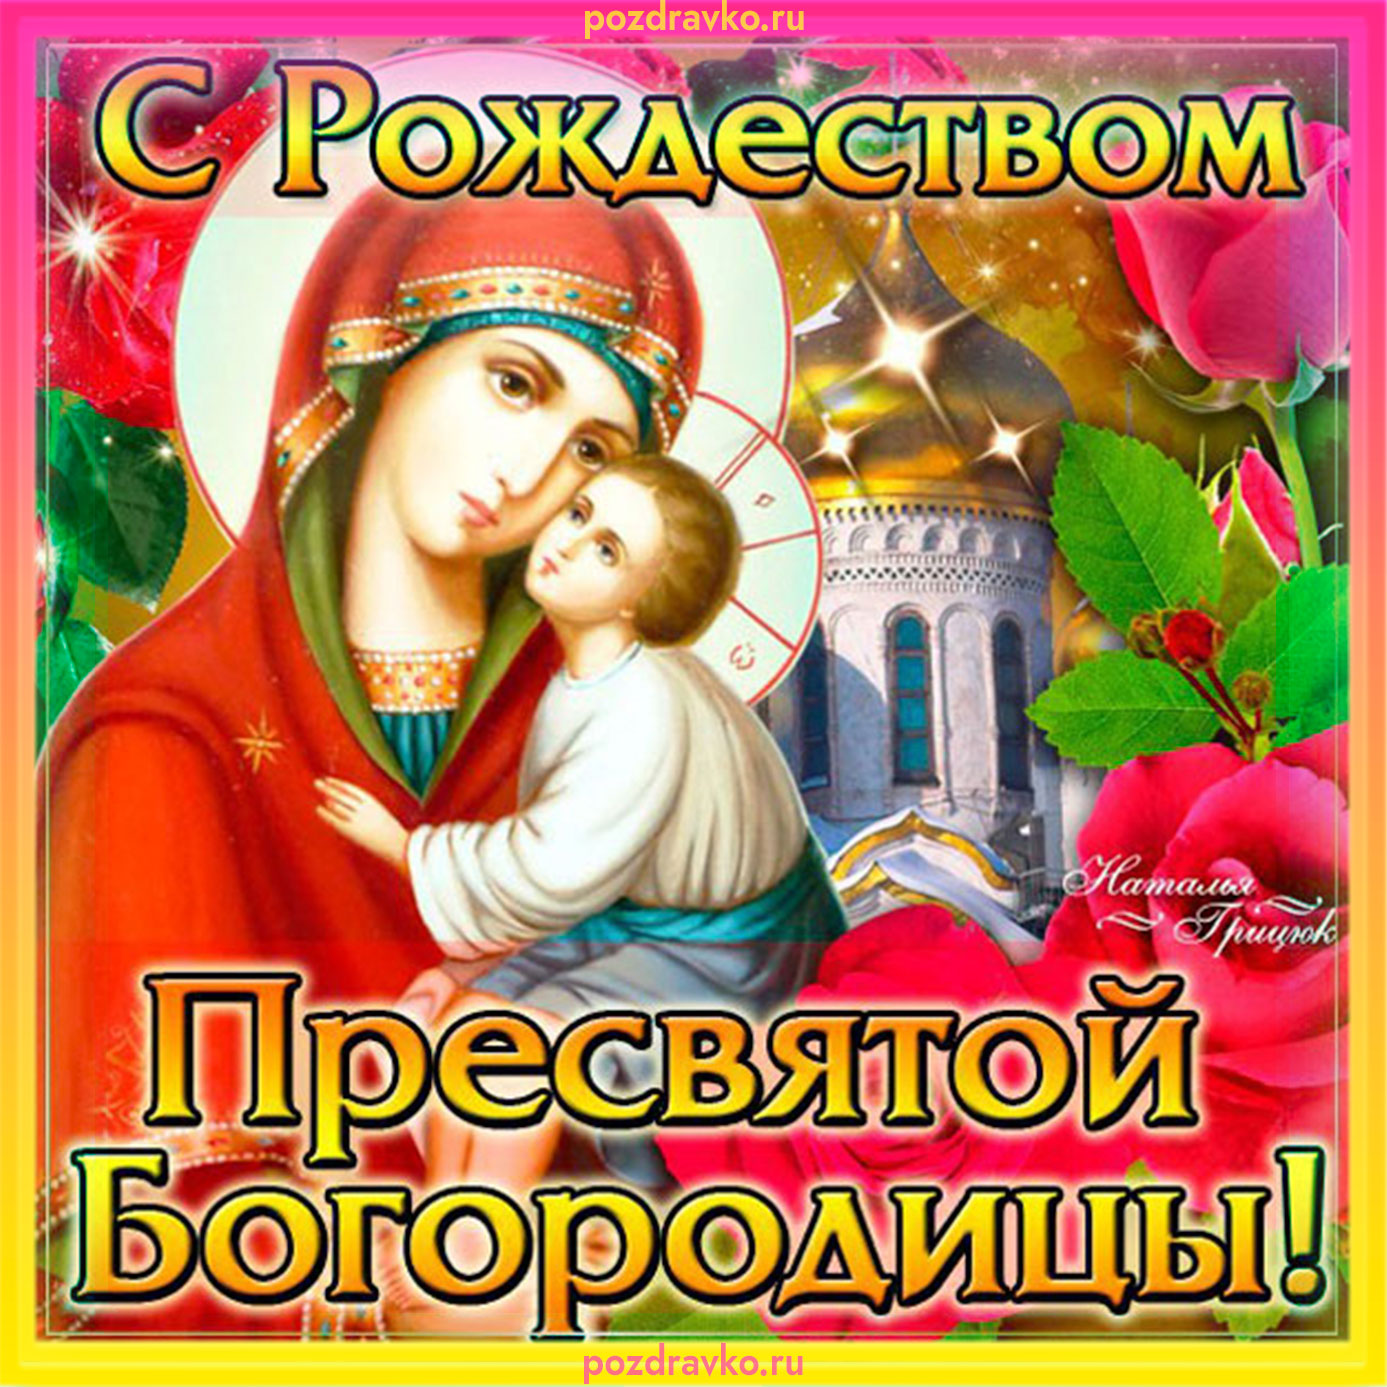 Праздники сегодня в россии божественный